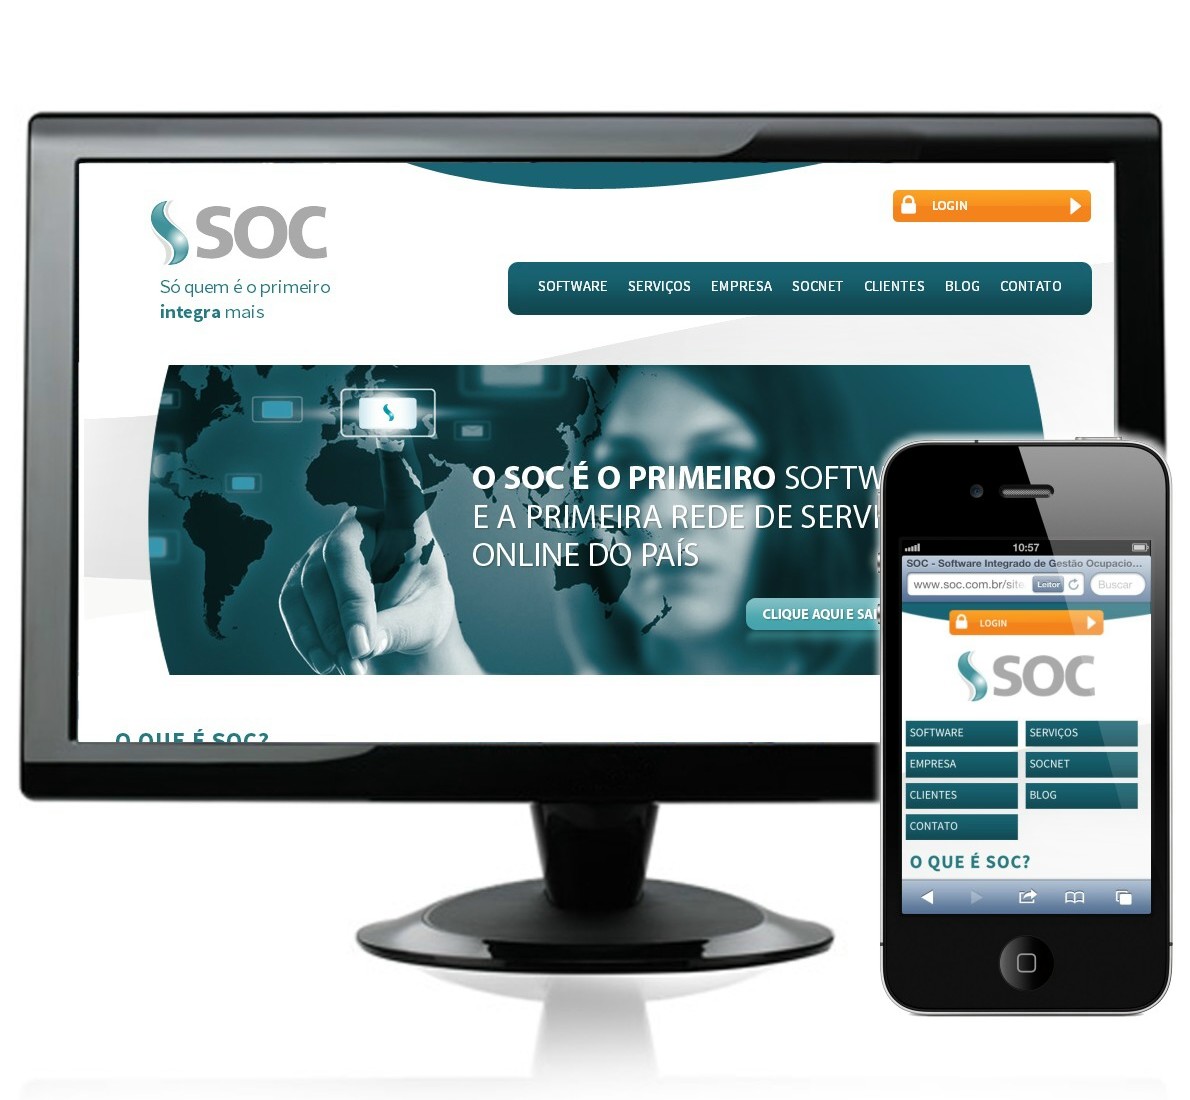 SOC apresenta nova identidade visual e lança novo website